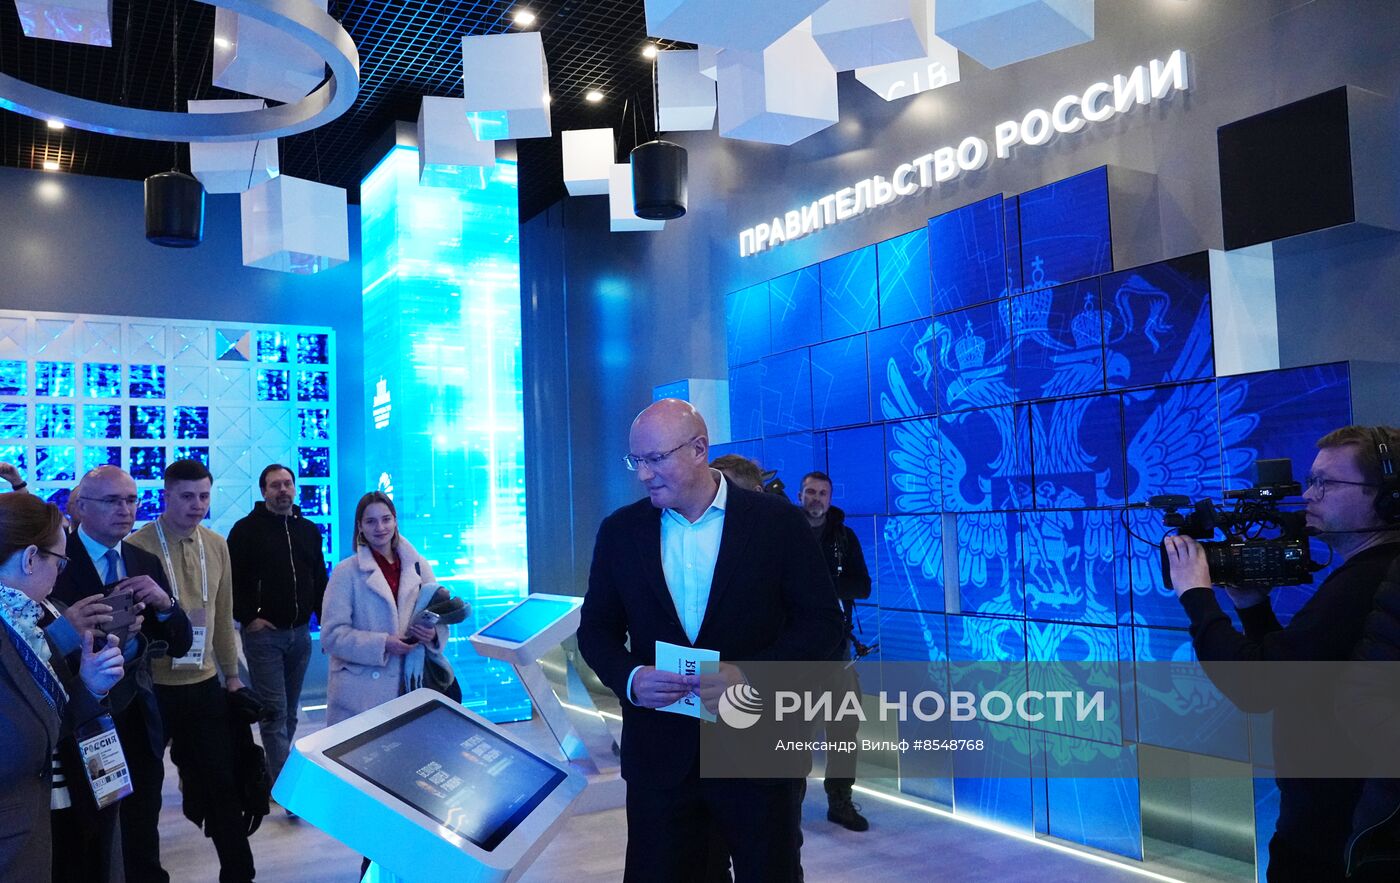 Вице-премьер Д. Чернышенко на открытии выставки "Россия"